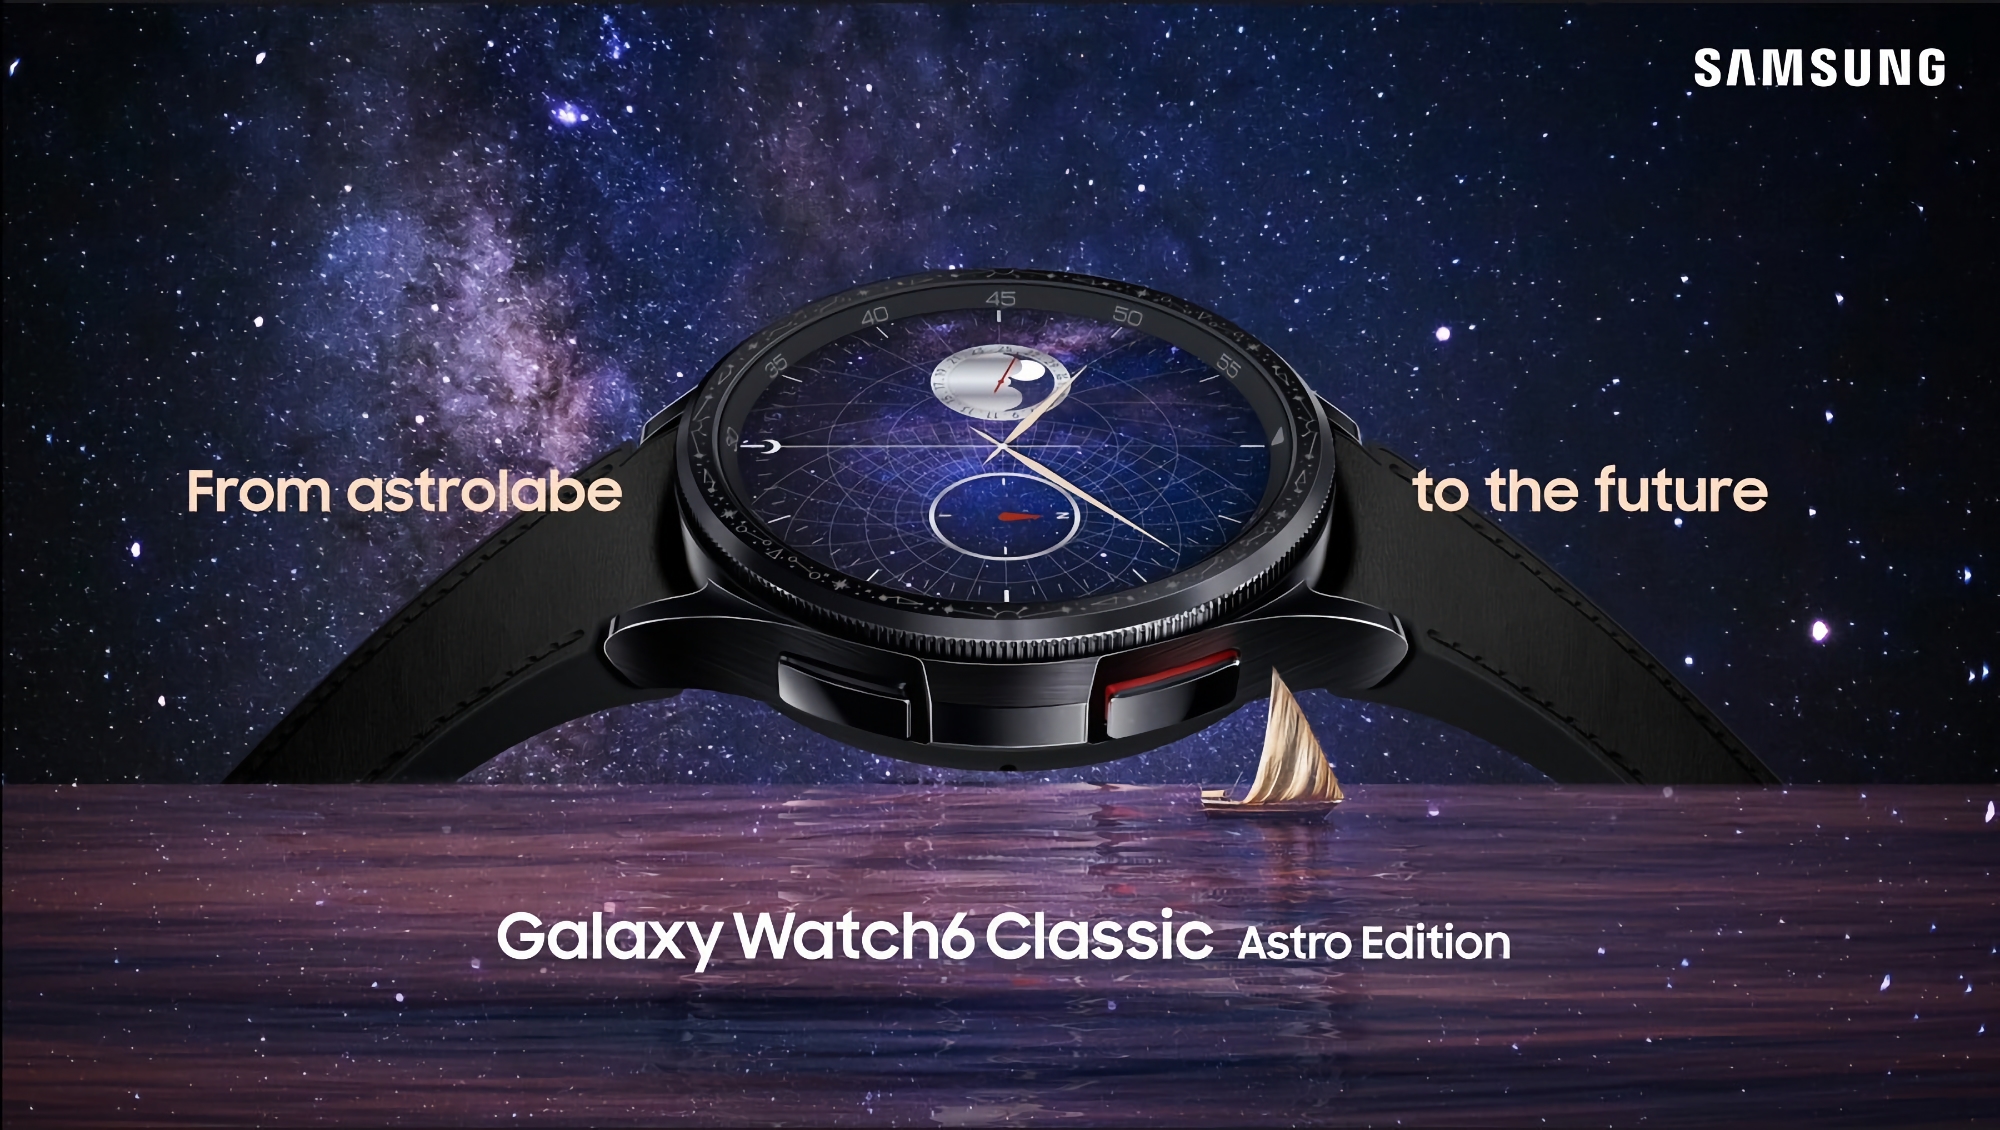 Samsung heeft een speciale versie van de Galaxy Watch 6 Classic Astro Edition gelanceerd met een astrolabiumvormige lunette